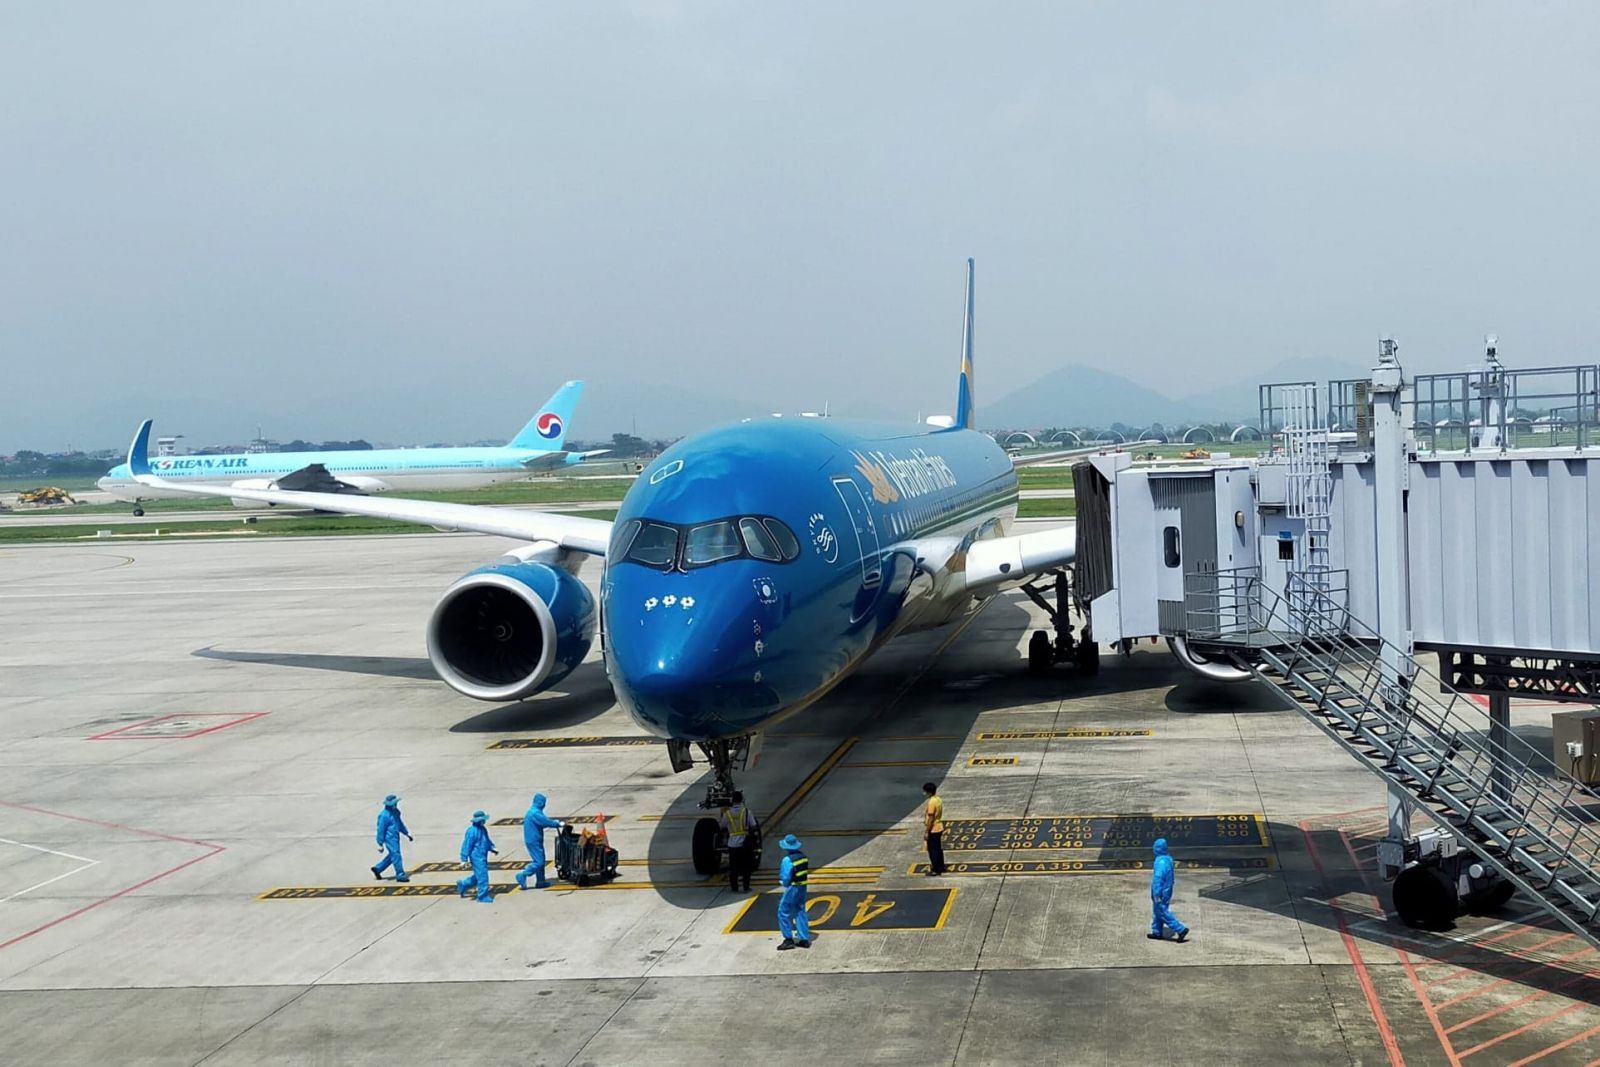 Vietnam Airlines kiến nghị phương án quy định mức giá sàn vé máy bay nội địa trong thời gian 36 tháng, mức giá sàn bằng 44% mức giá trần như Trung Quốc áp dụng giai đoạn từ 2004-2013.